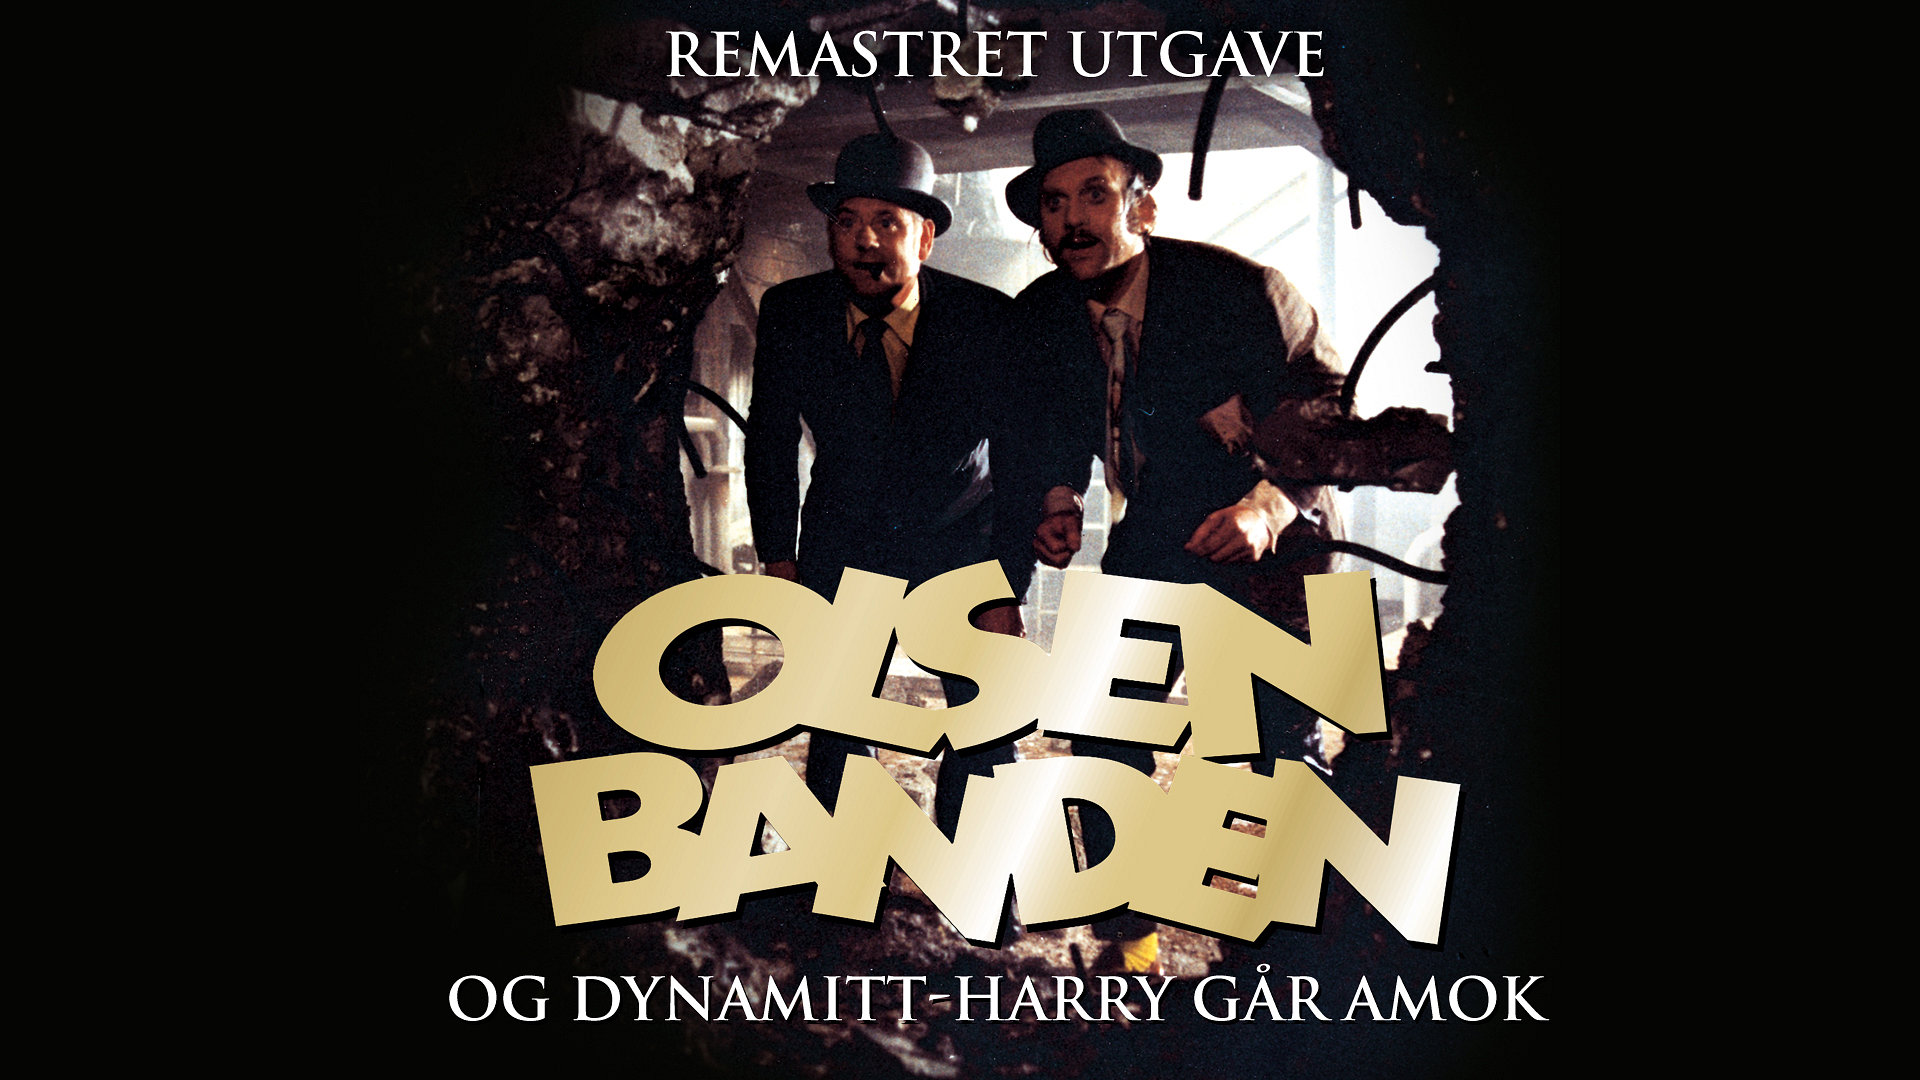 Olsenbanden Og Dynamitt-harry Går Amok